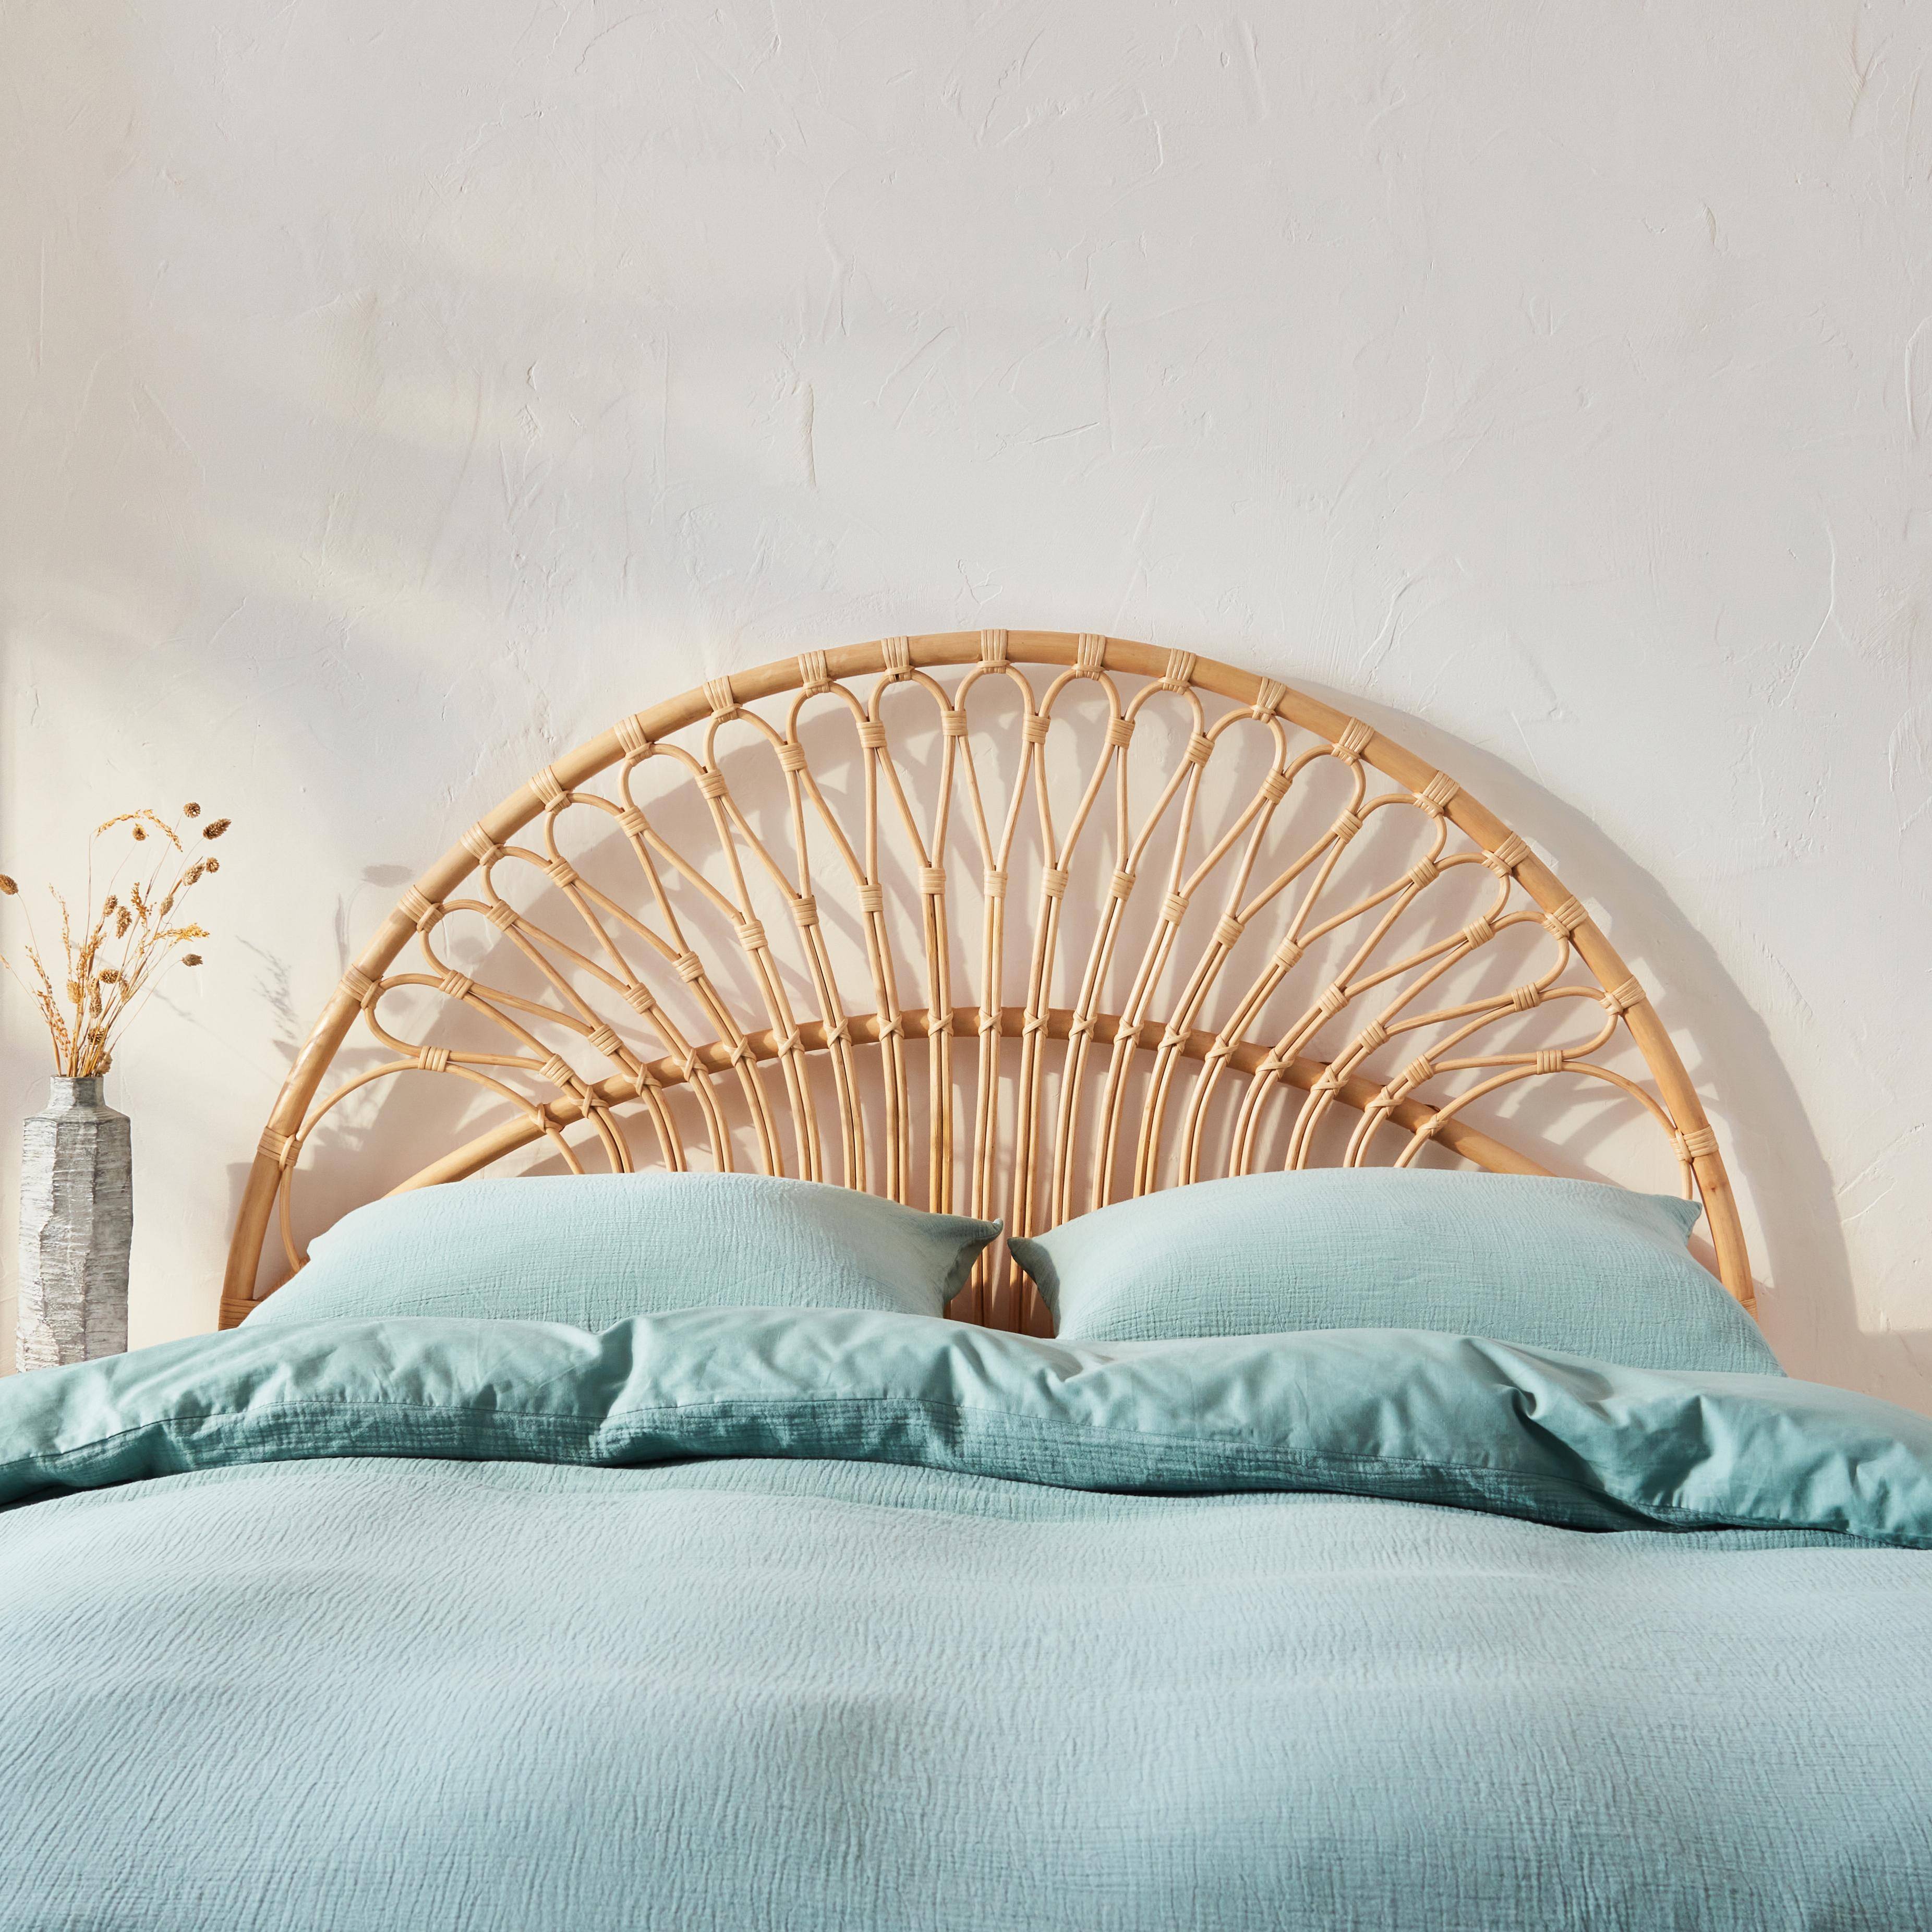 Tête de lit en rotin naturel compatible avec les lits d'une largeur de 140cm, L 140 x P3 x H115cm,sweeek,Photo2